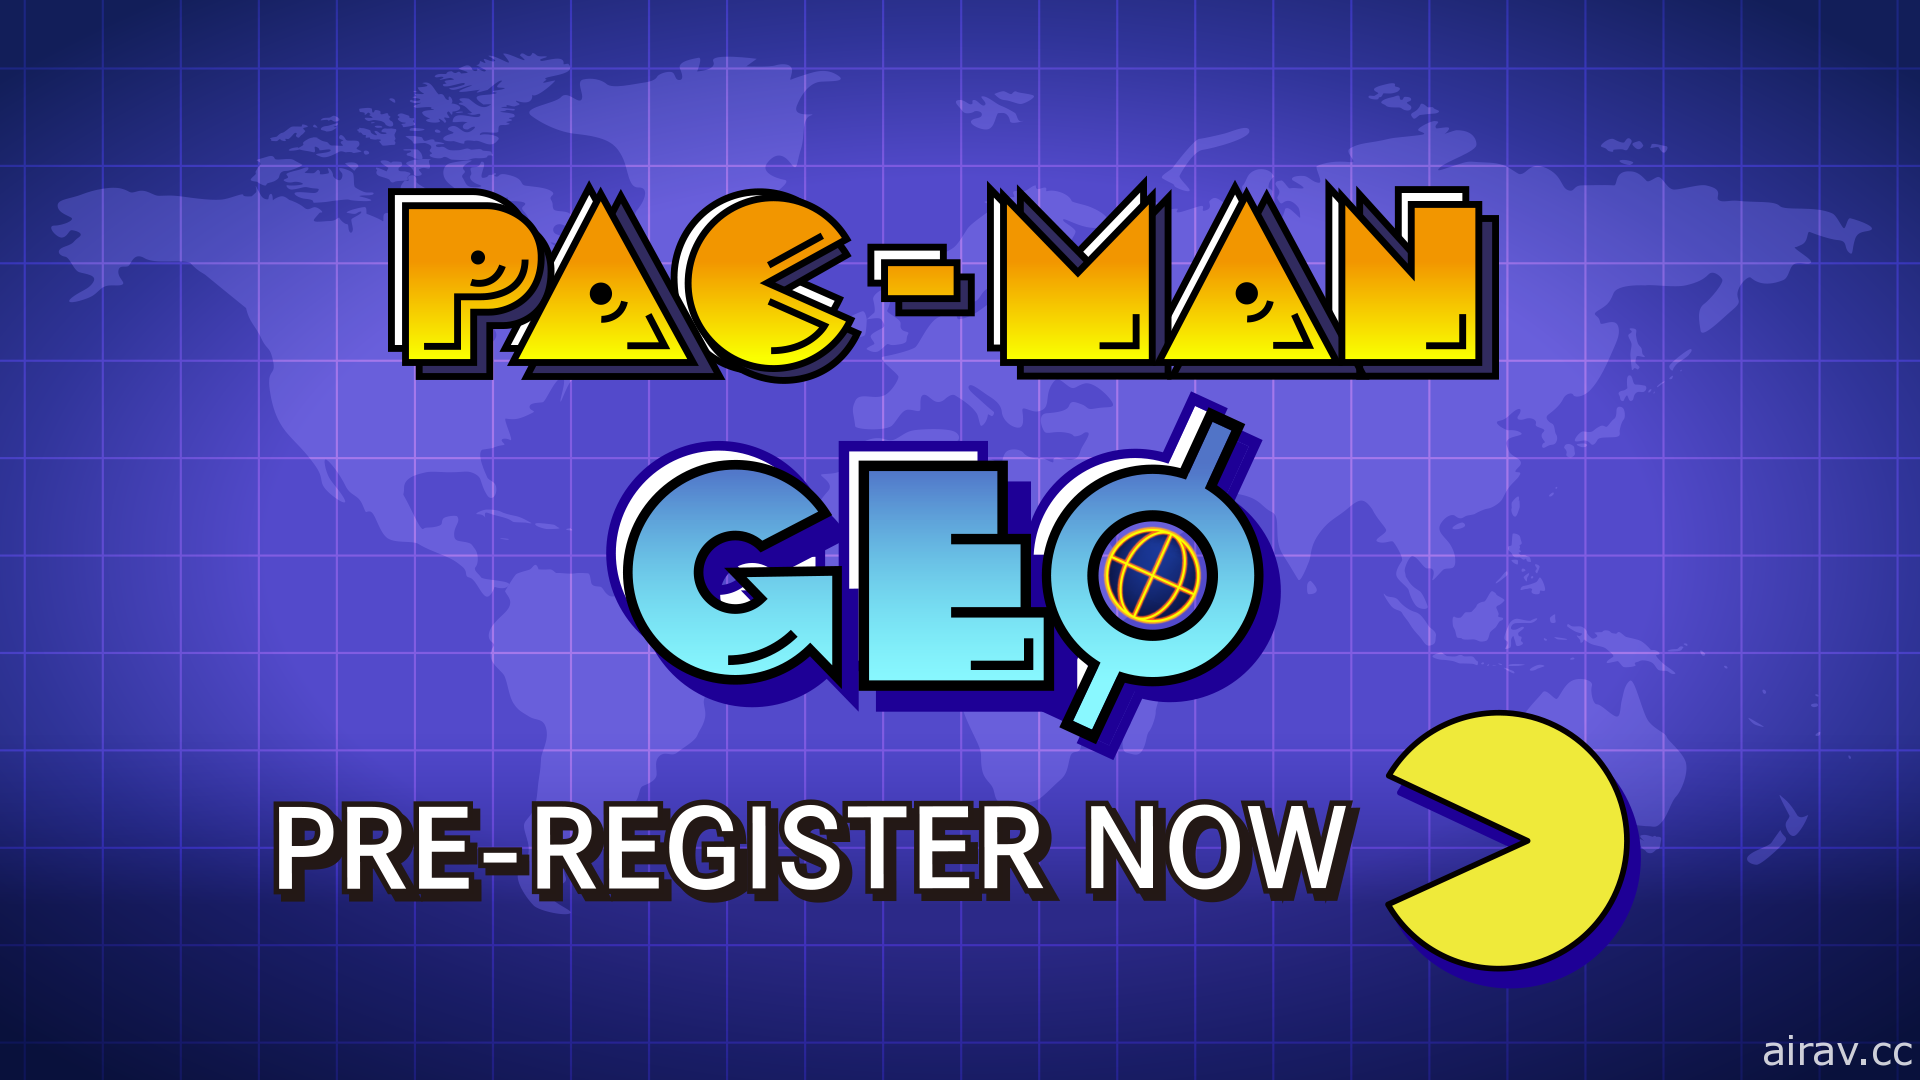 经典大型电玩改编《PAC-MAN GEO》释出实机预告影片 操控小精灵在世界地图上收集豆子